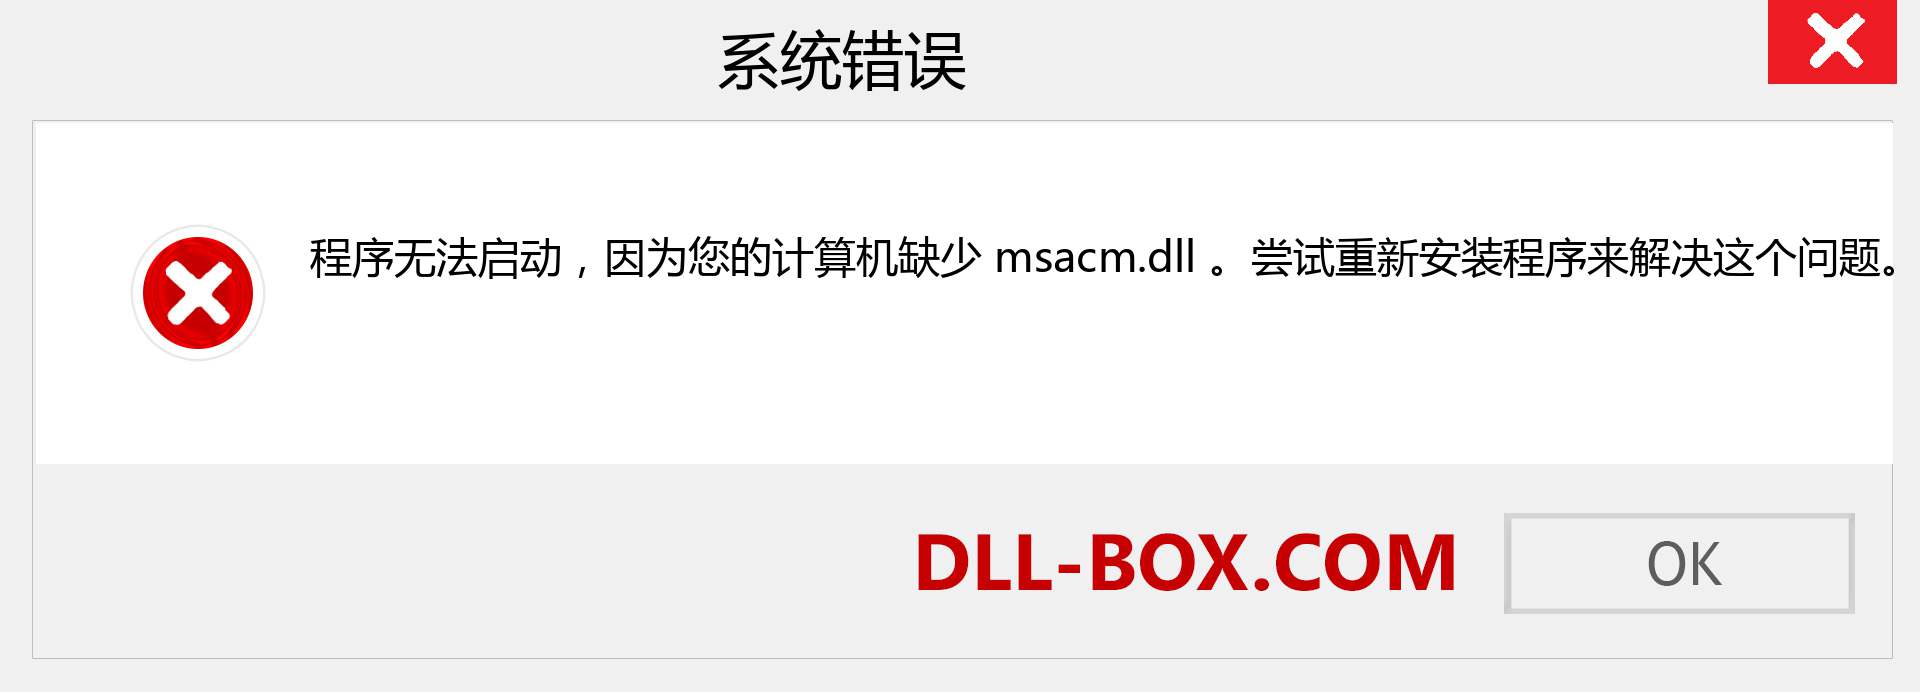 msacm.dll 文件丢失？。 适用于 Windows 7、8、10 的下载 - 修复 Windows、照片、图像上的 msacm dll 丢失错误